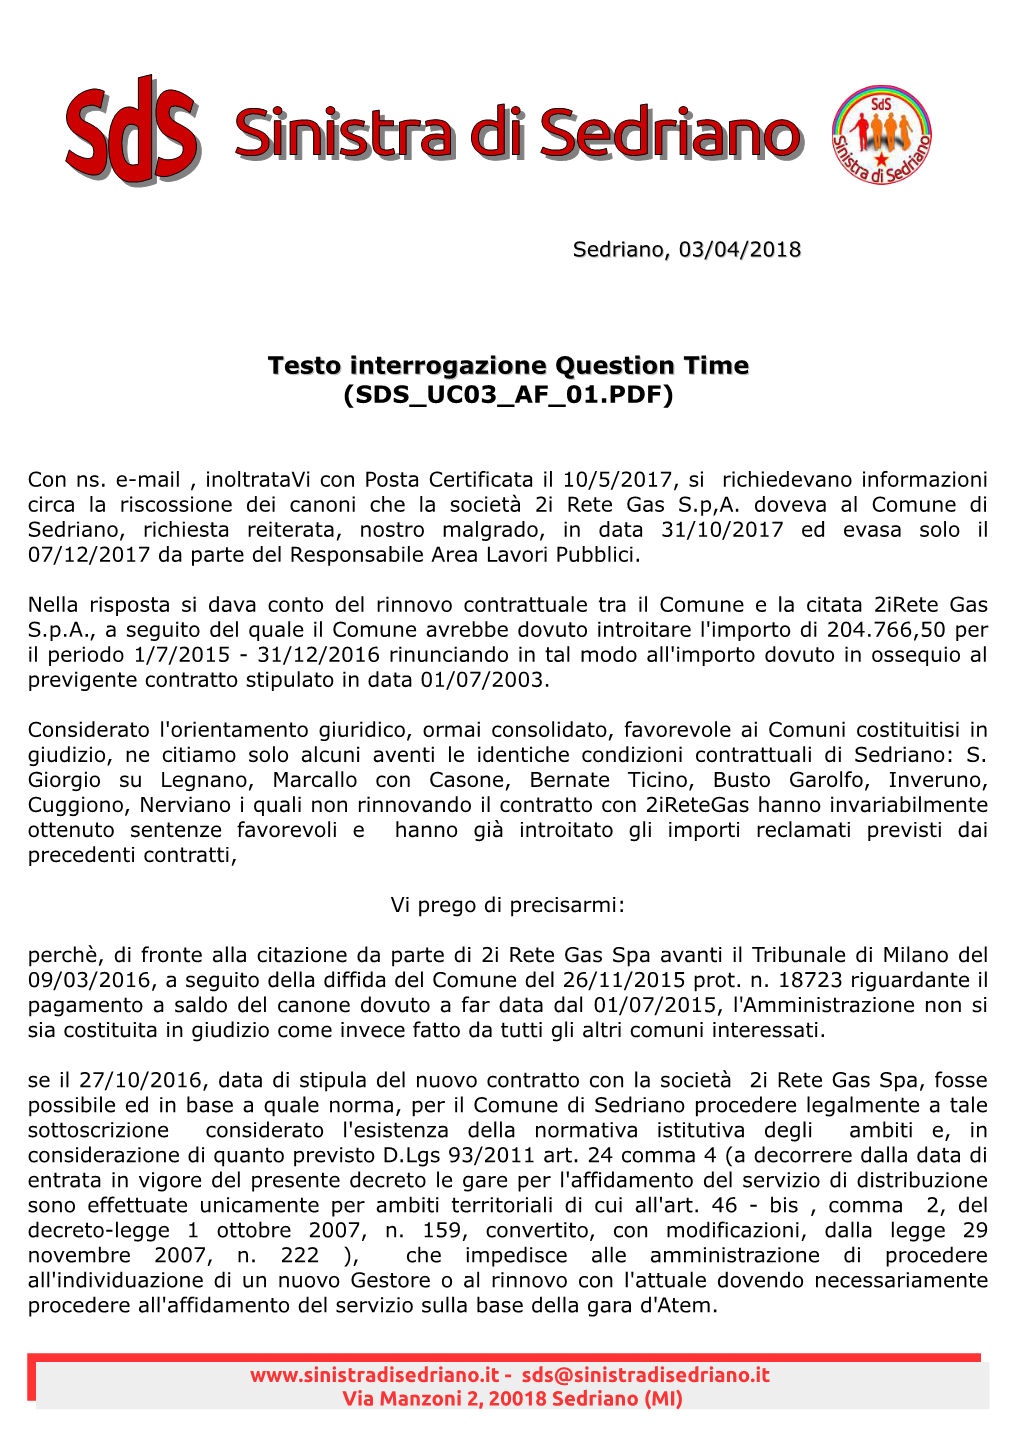 Sedriano, 03/04/2018 Con Ns. E-Mail , Inoltratavi Con Posta Certificata Il